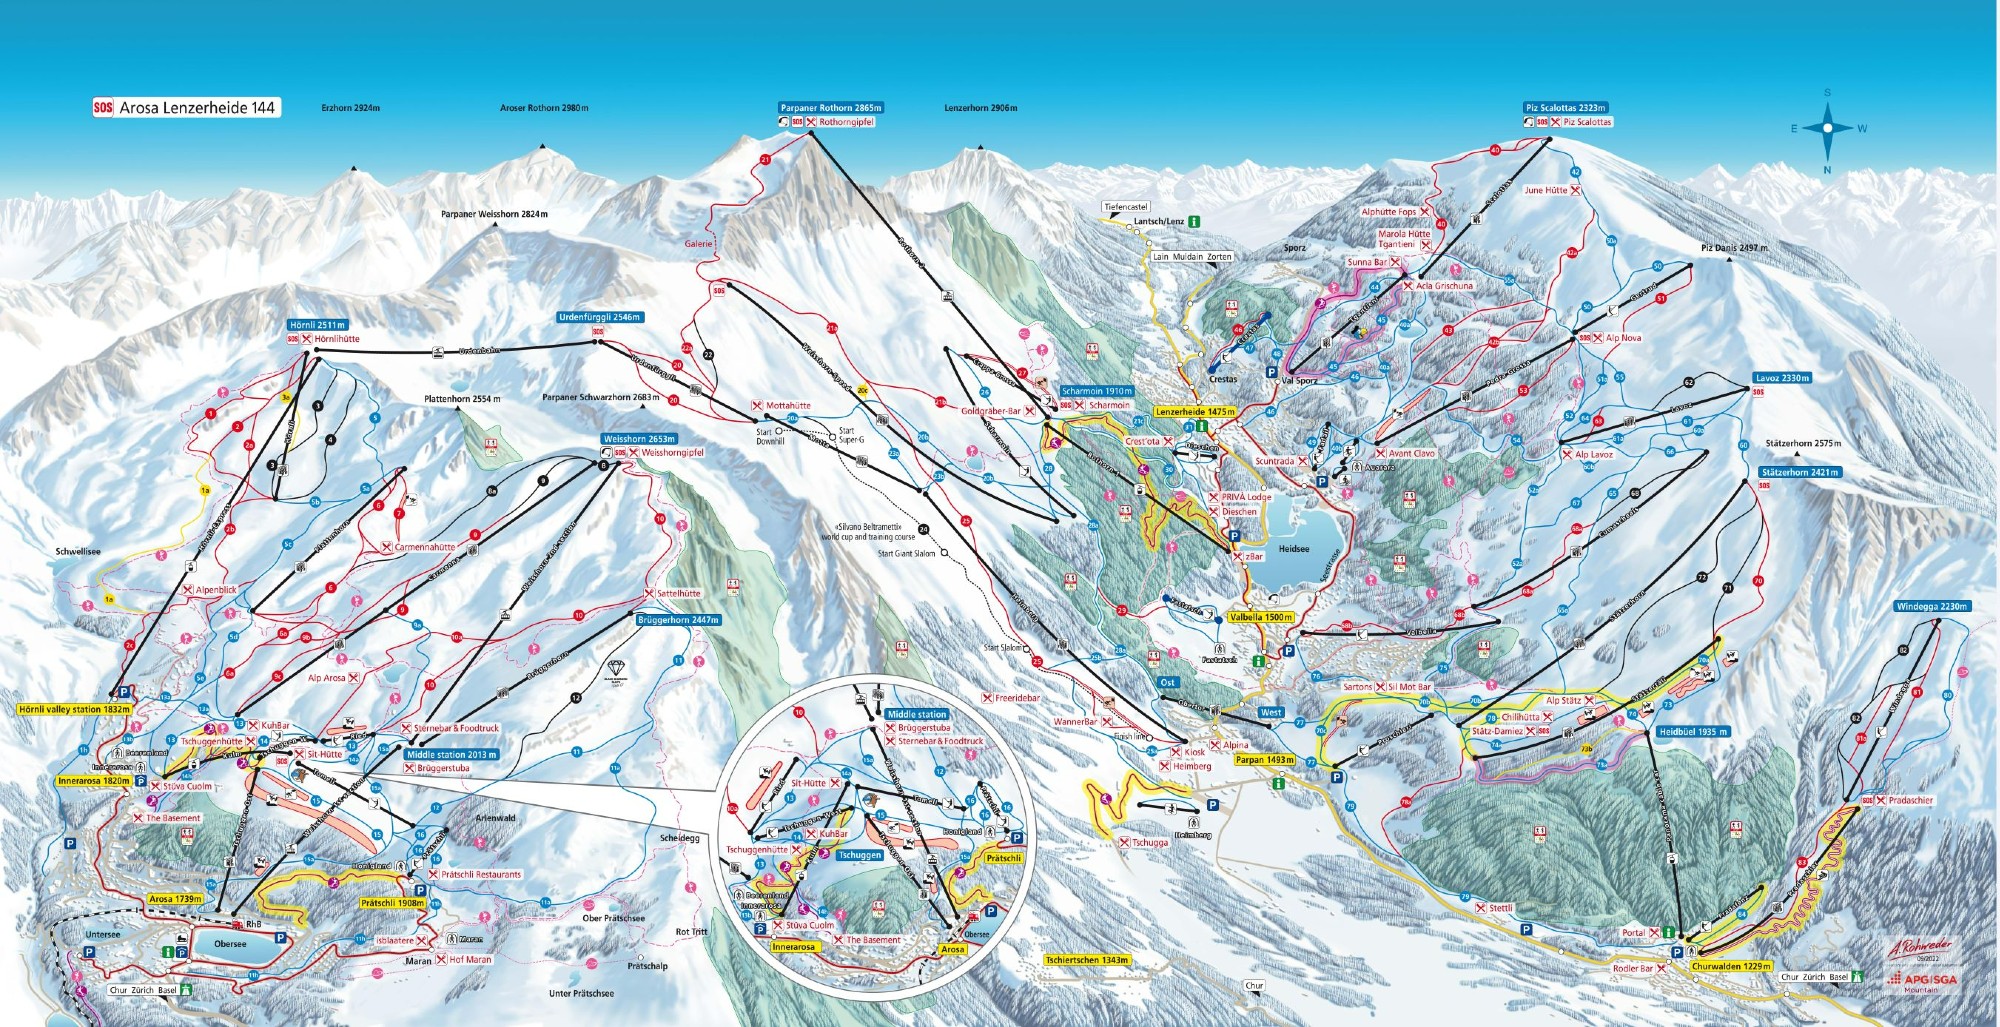 Arosa Lenzerheide ski